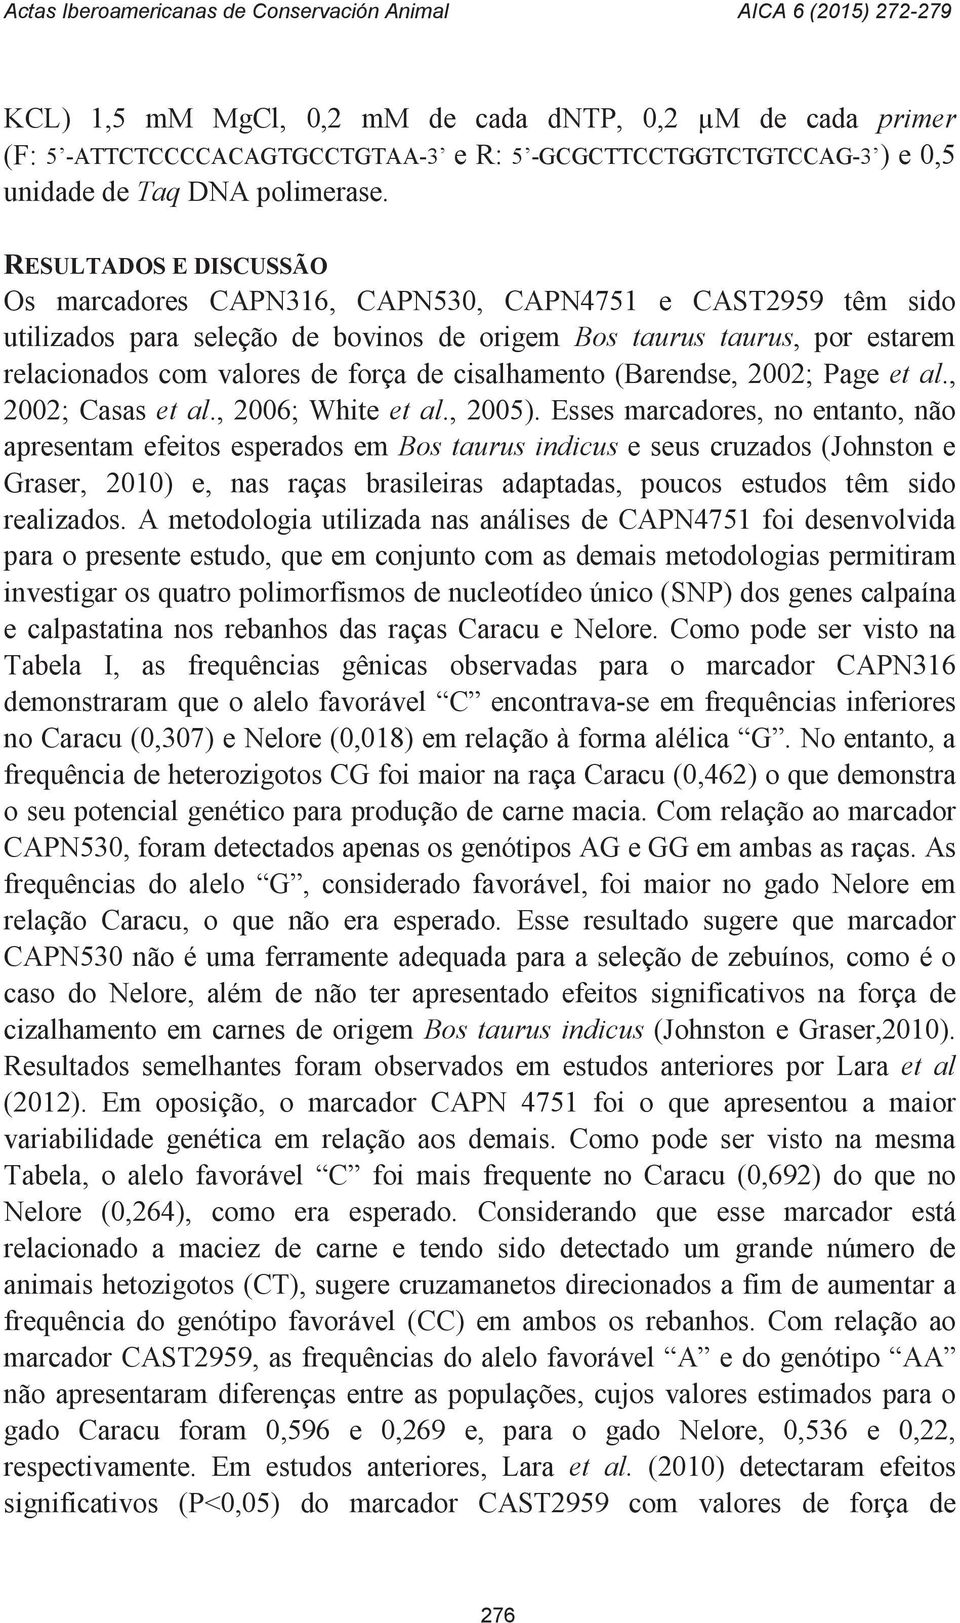 cisalhamento (Barendse, 2002; Page et al., 2002; Casas et al., 2006; White et al., 2005).